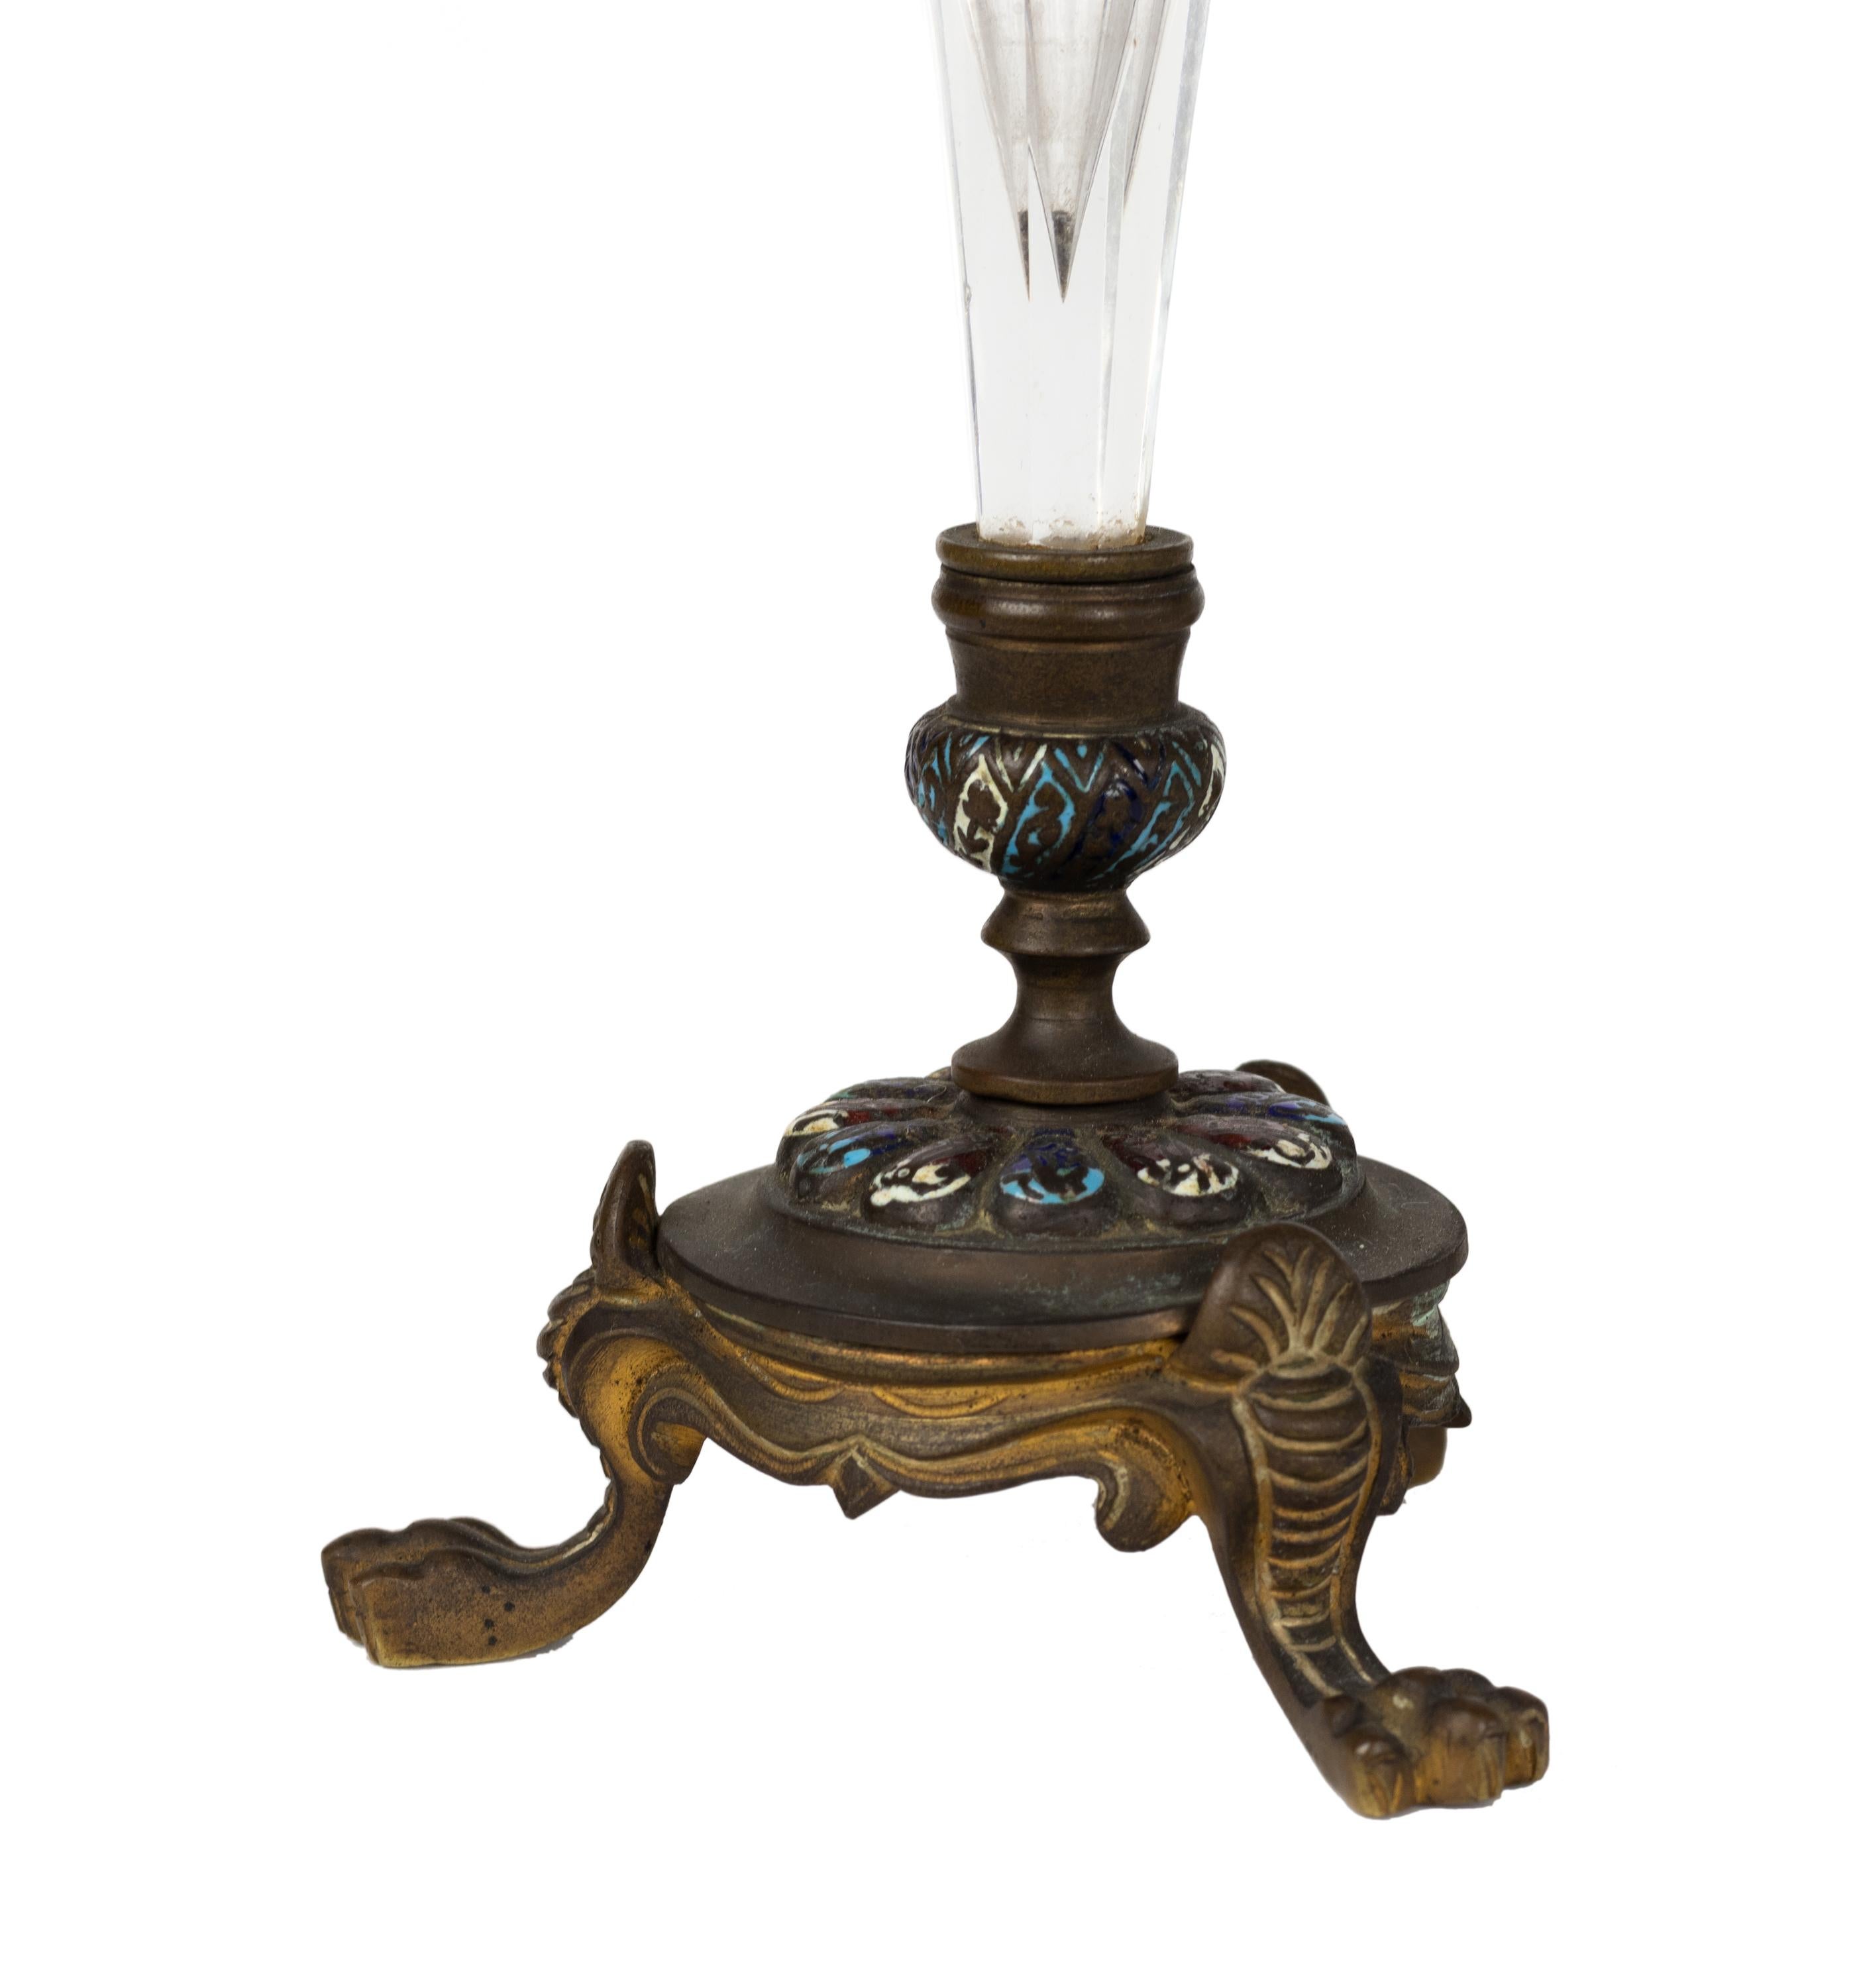 Ein Paar Französisch Champleve Emaille vergoldet Bronze montiert graviert Glasform Vasen.
Klare trompetenförmige Glasvase, vergoldete Bronze mit Löwenfüßen am Sockel.
Ende des 19. Jahrhunderts. 

Die Champlevé-Emaillierung ist eine dekorative